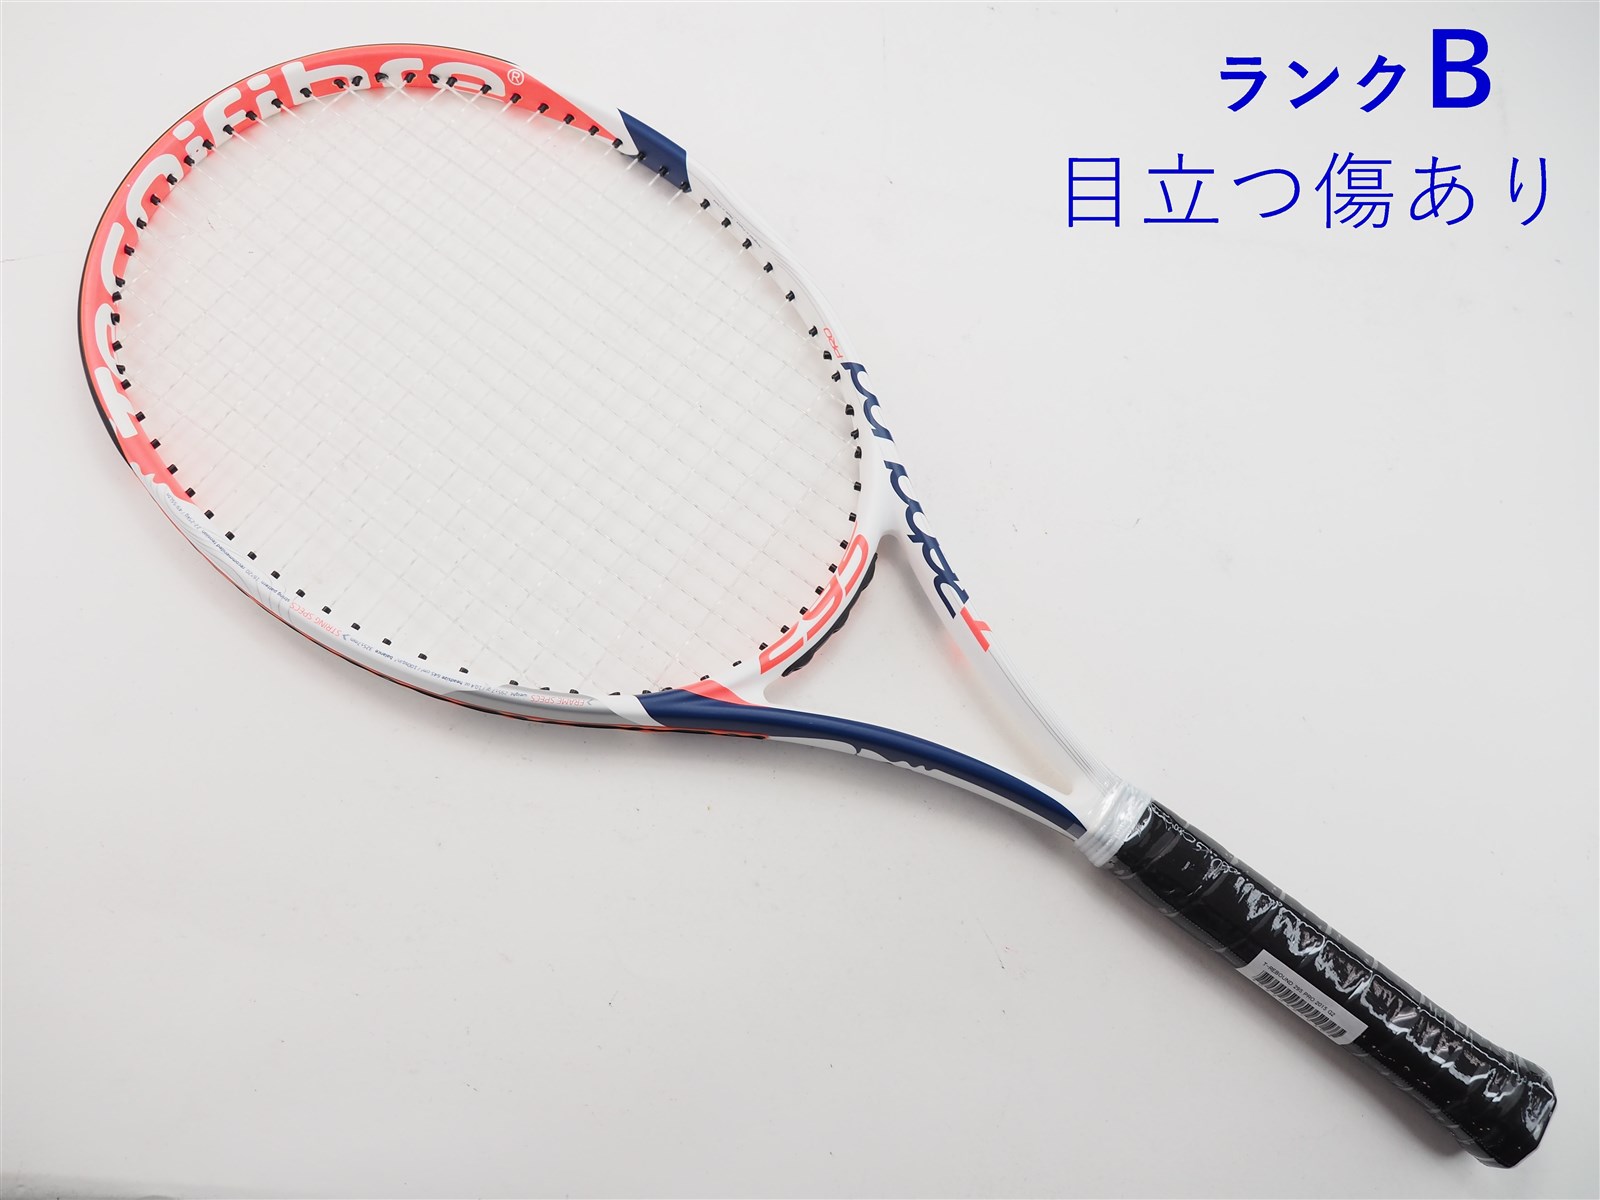 テニスラケット テクニファイバー ティーリバウンド プロ ライト 2012年モデル (G1)Tecnifibre T-Rebound PRO Lite 2012